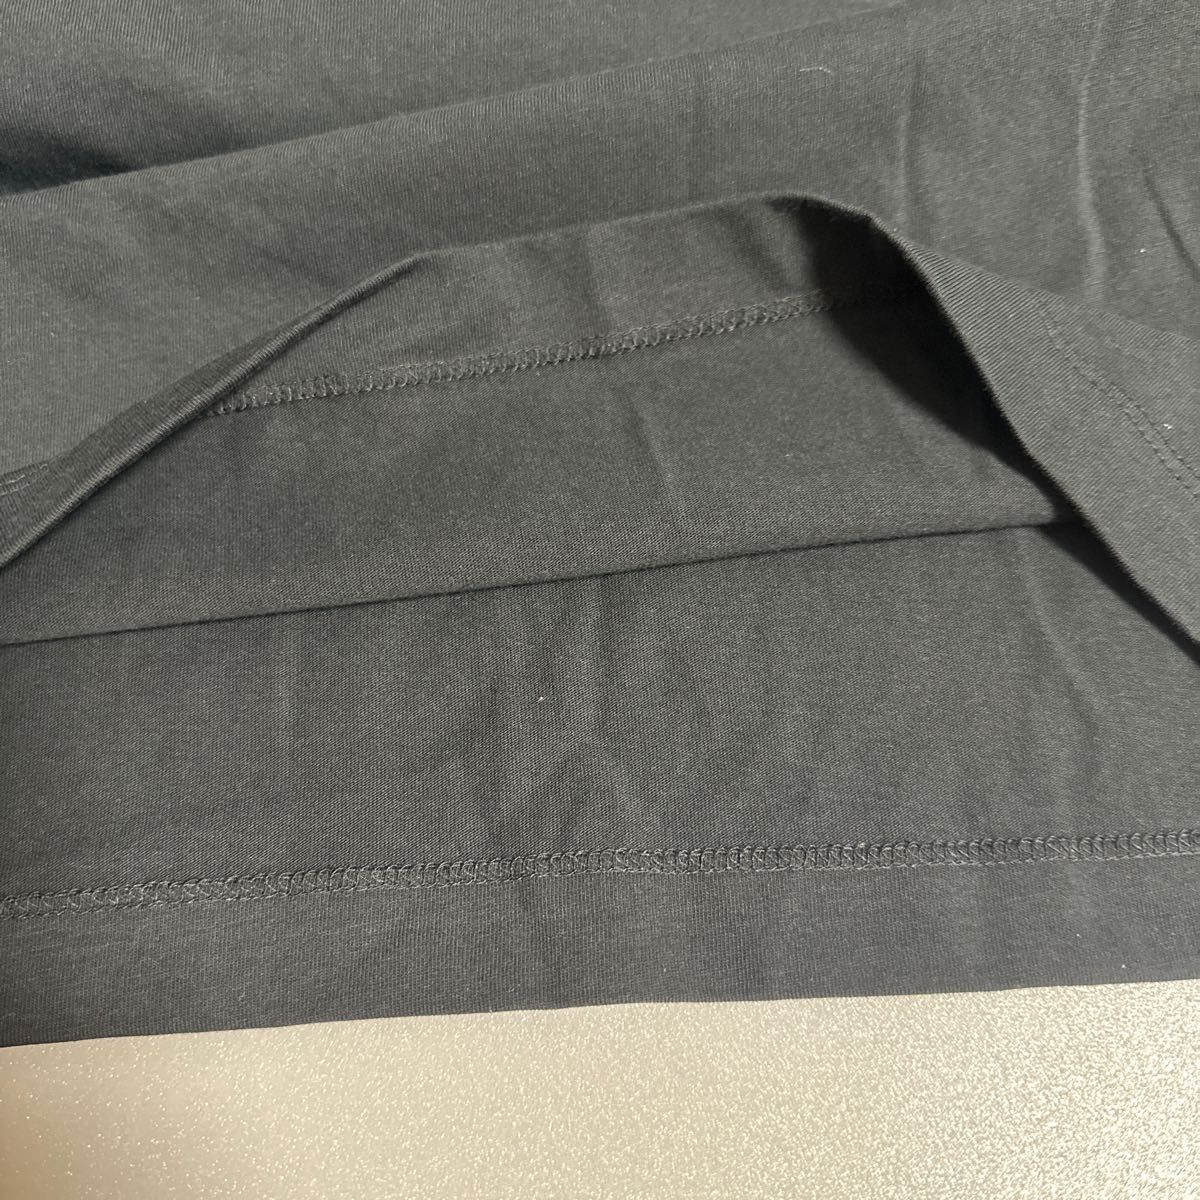 新品 正規品 NIKE ナイキ ビッグロゴ クルーネック 半袖 Tシャツ　2XLサイズ